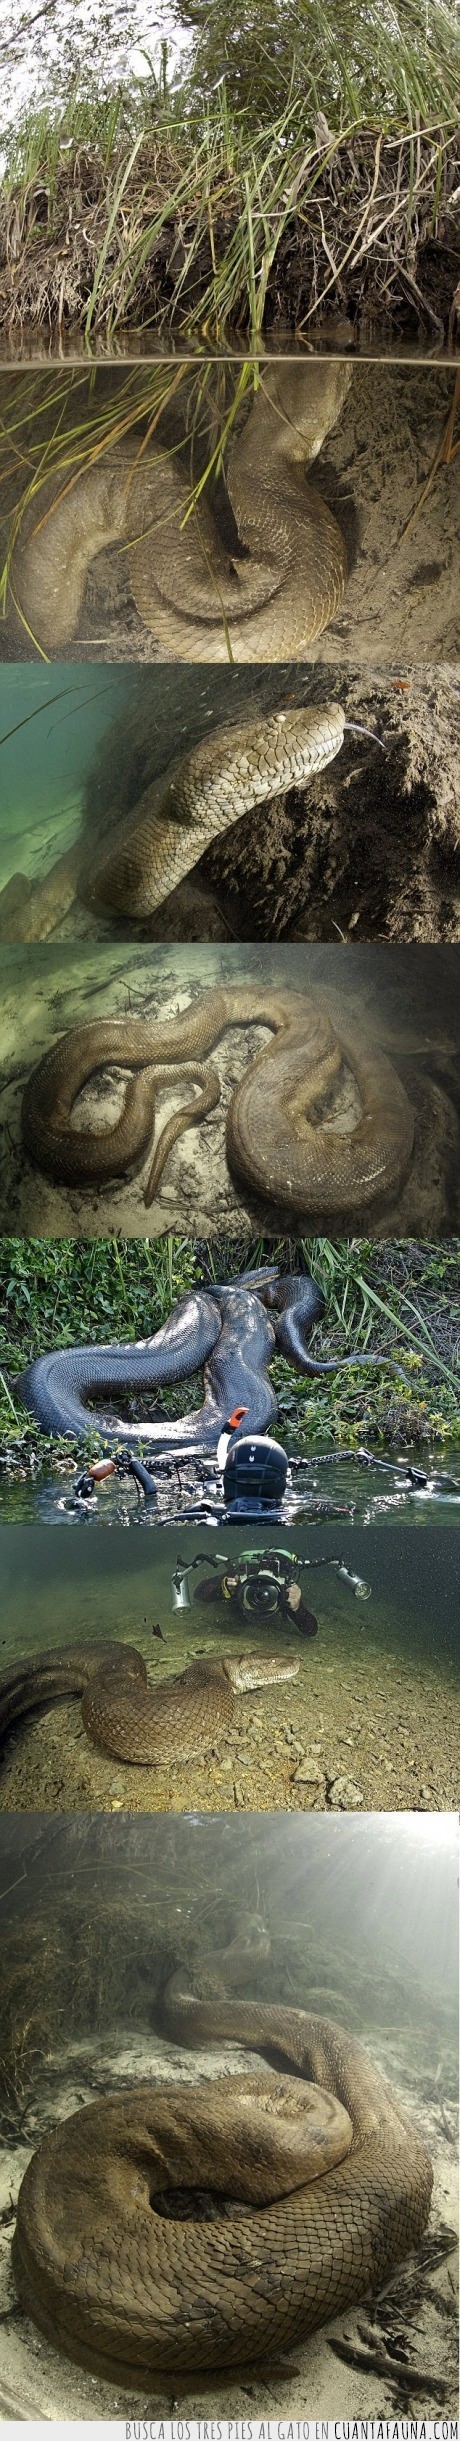 serpiente,grande,anaconda,animales